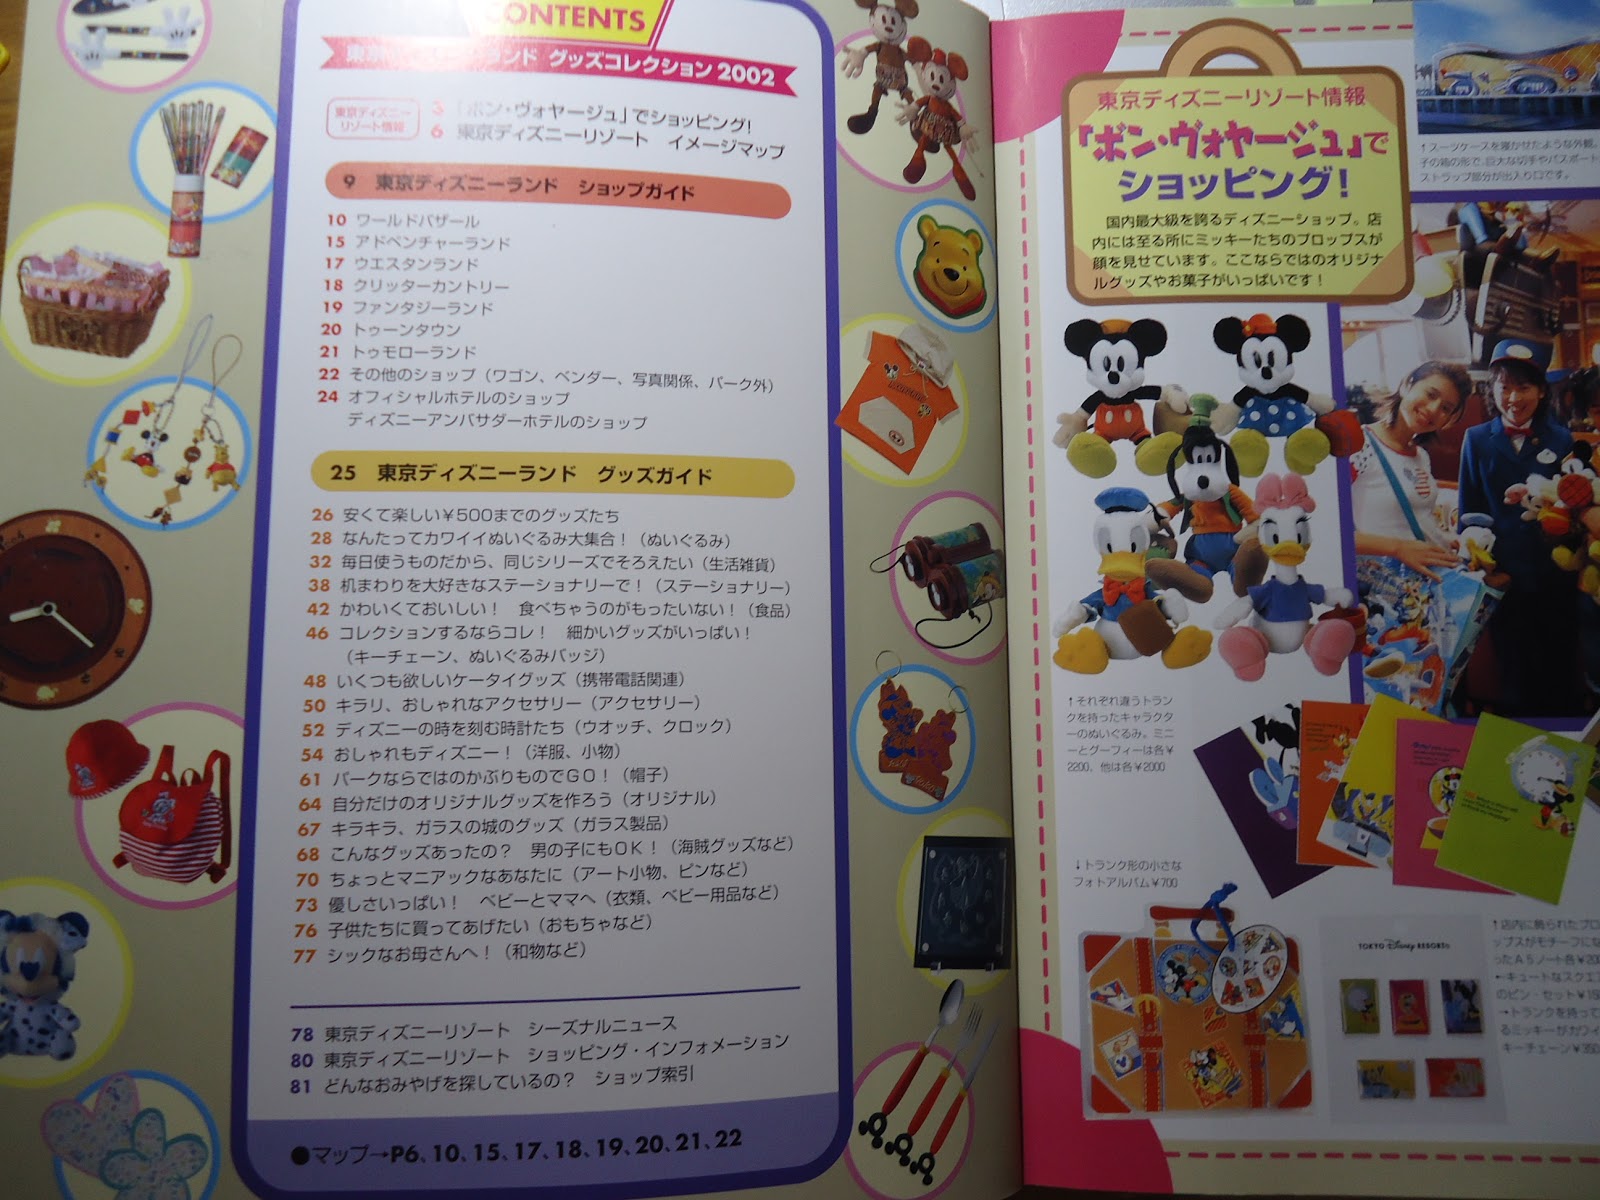 ディズニーの本 東京ディズニーランド グッズコレクション 02 を読んでみた ぼくのケチリッチな節約日記